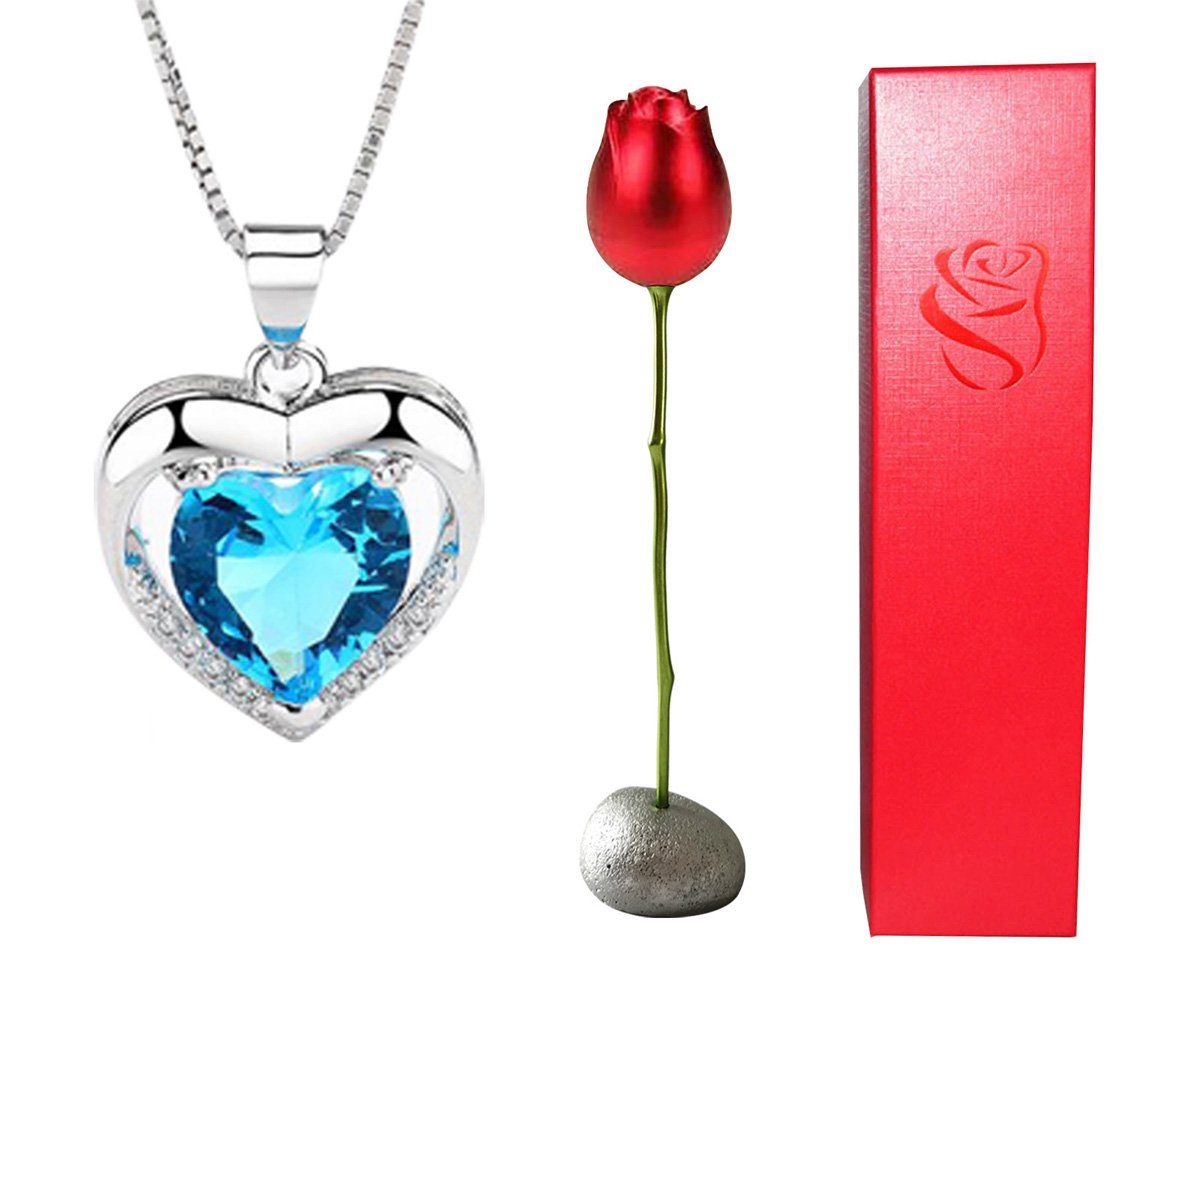 yozhiqu Herzkette Herzförmiges Blau-Lila Kristalldiamant-Anhänger-Halskette, Eleganter Schmuck für jeden Anlass,perfektes Geschenk für Valentinstag